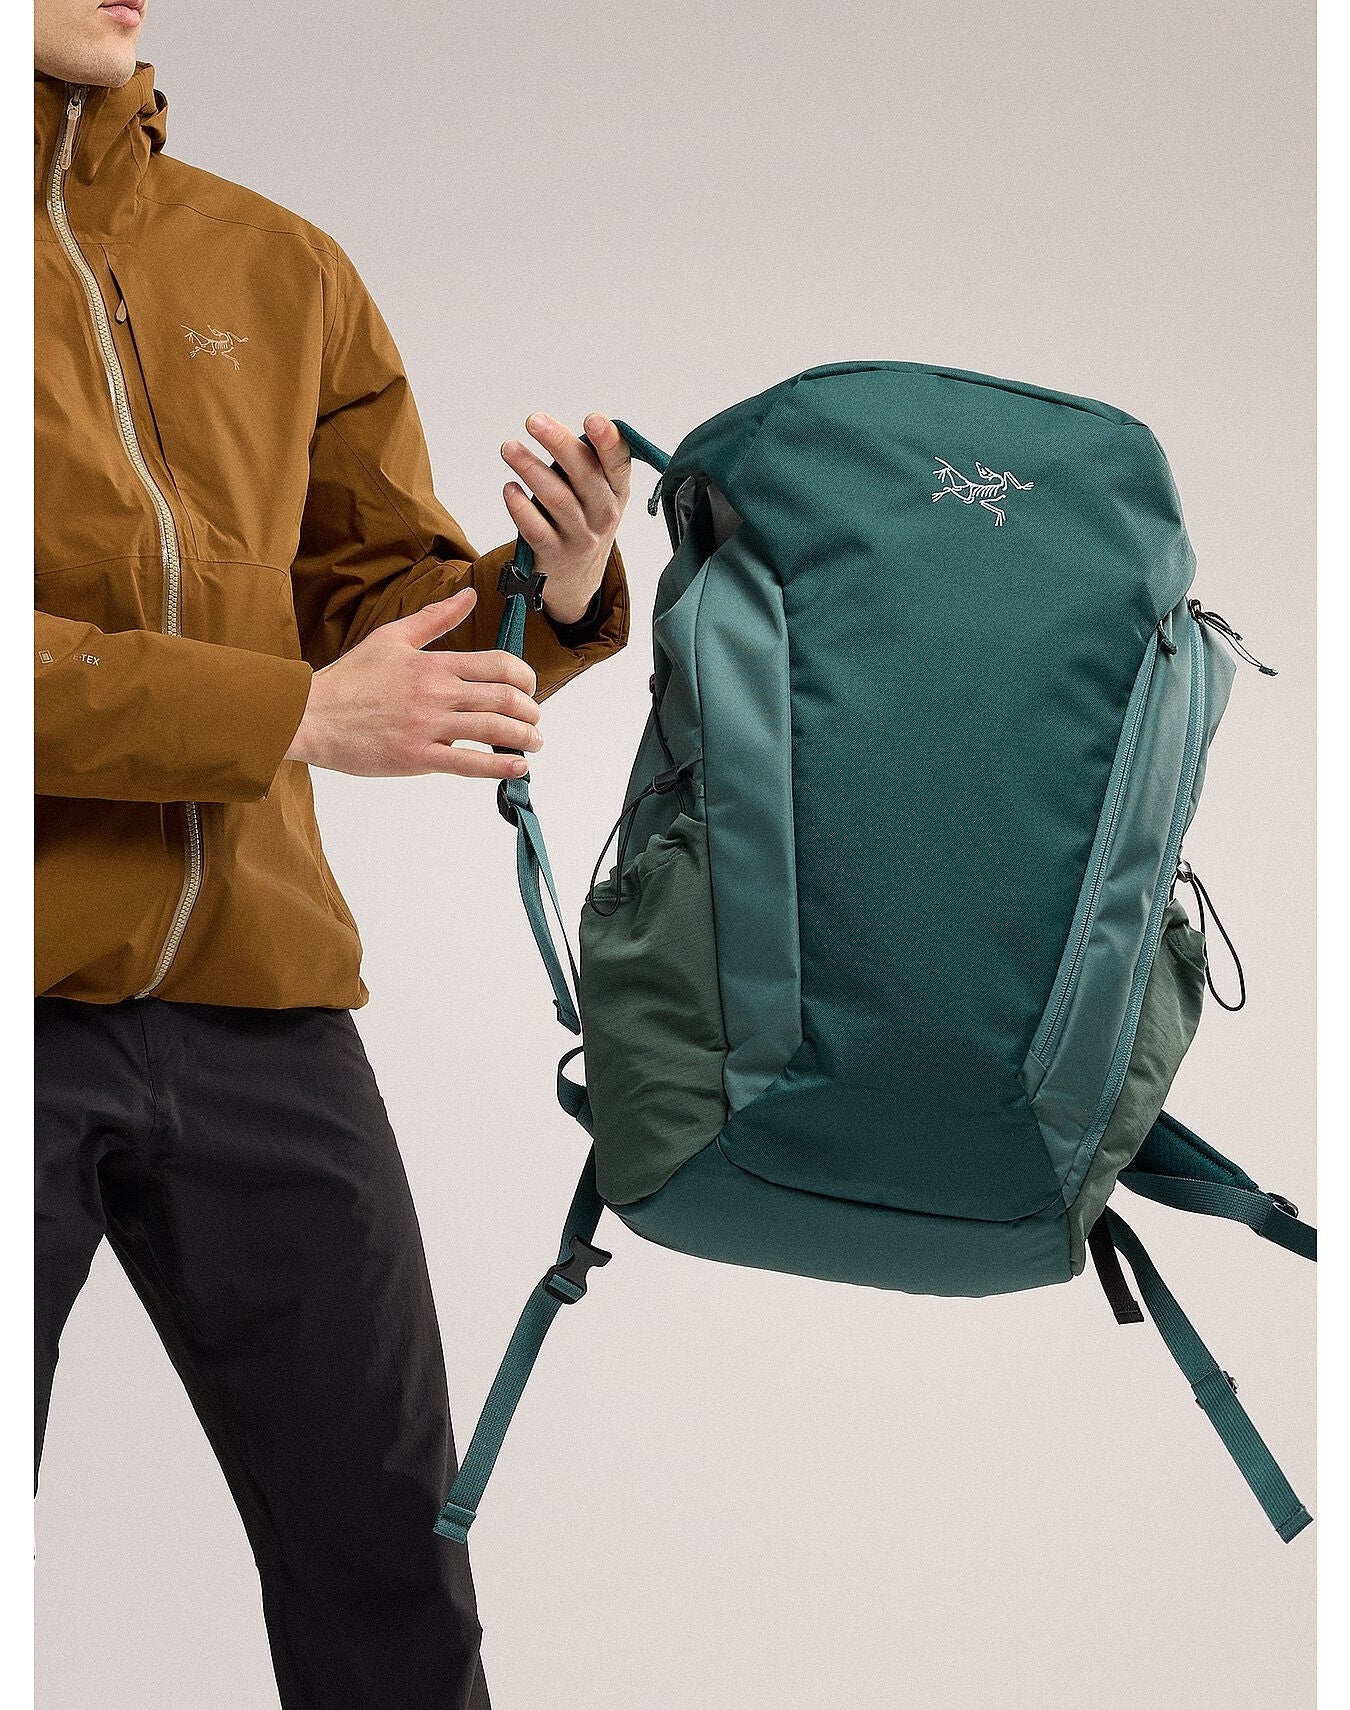 Arc'teryx Mantis 30 Backpack – OutdoorsInc.com